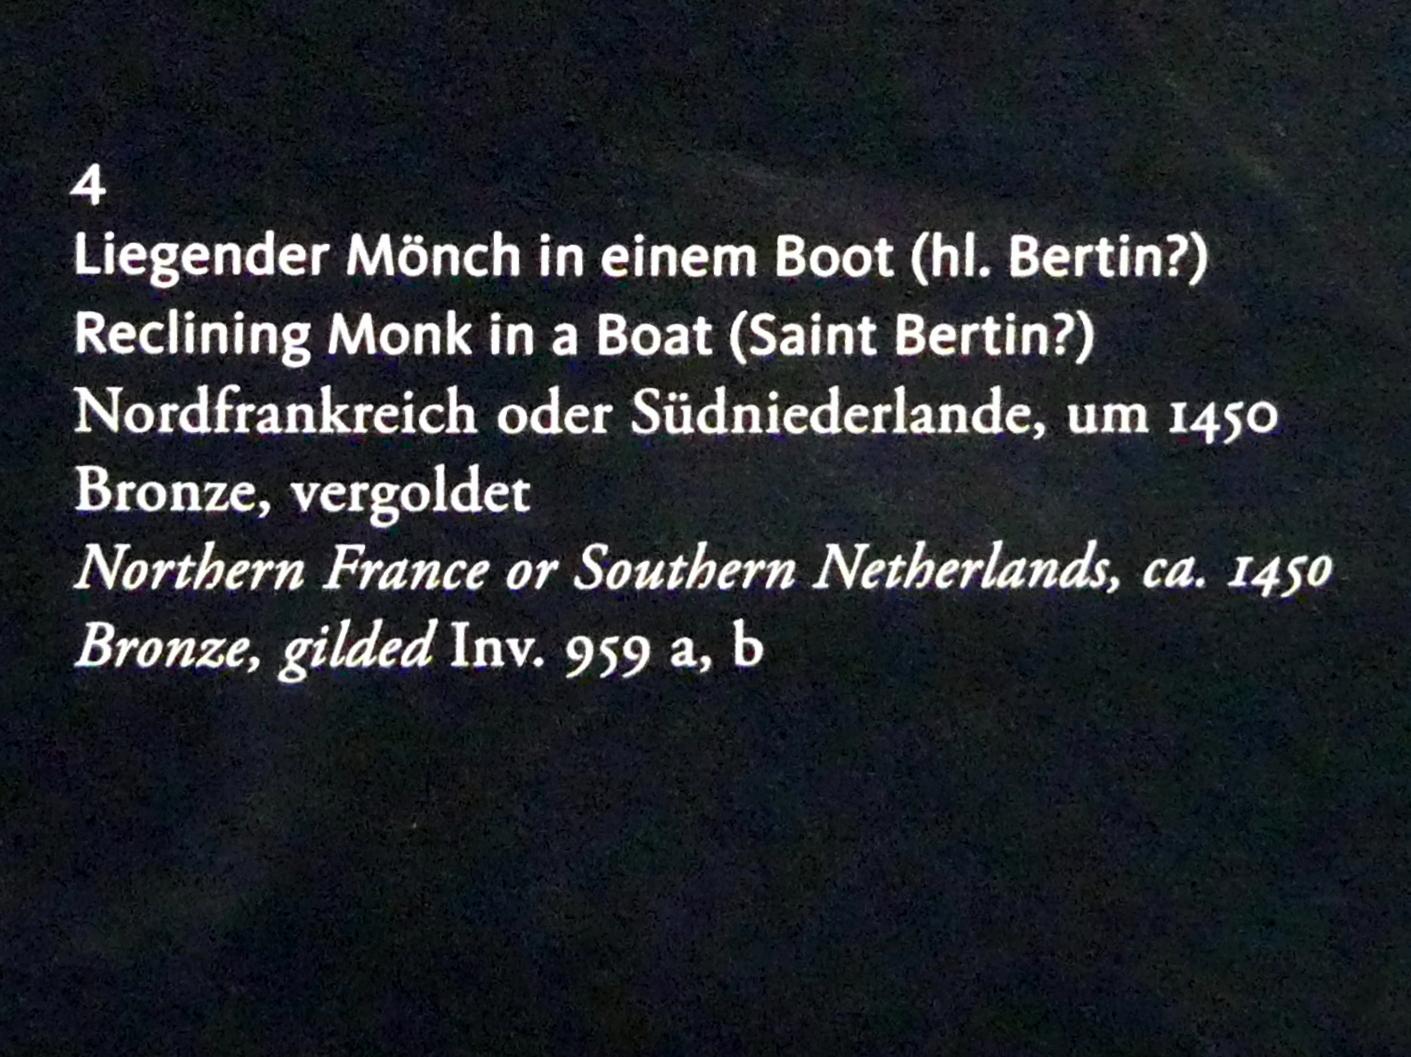 Liegender Mönch in einem Boot (hl. Bertin?), Frankfurt am Main, Liebieghaus Skulpturensammlung, Mittelalter 3 - große Kunst im kleinen Format, um 1450, Bild 2/2